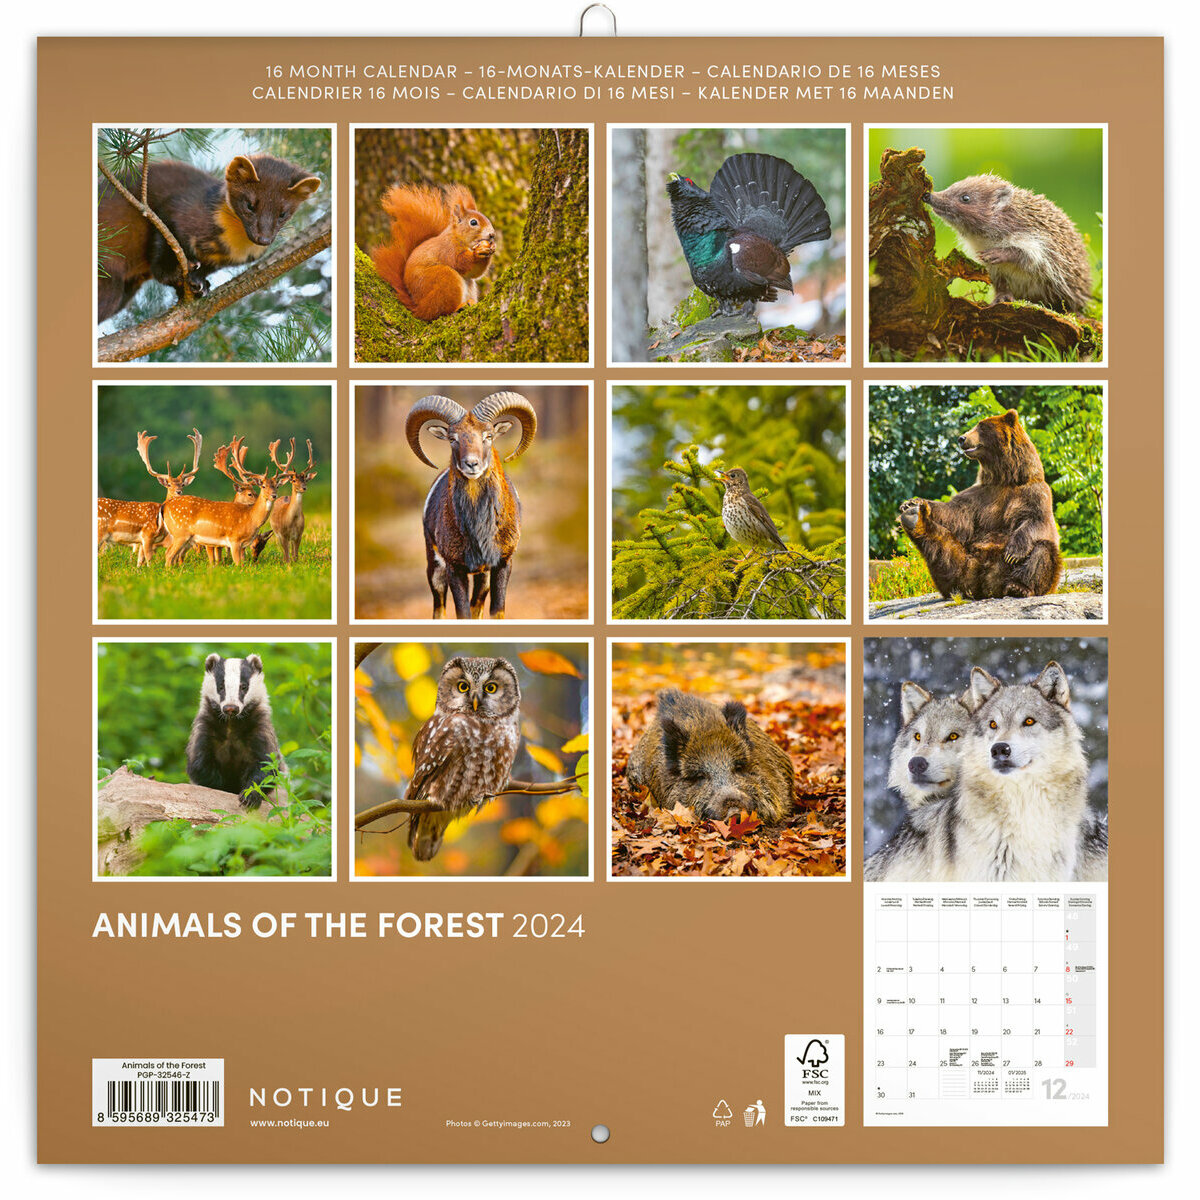 Calendrier de La Poste 2024, Almanach du facteur, animaux de la forêt